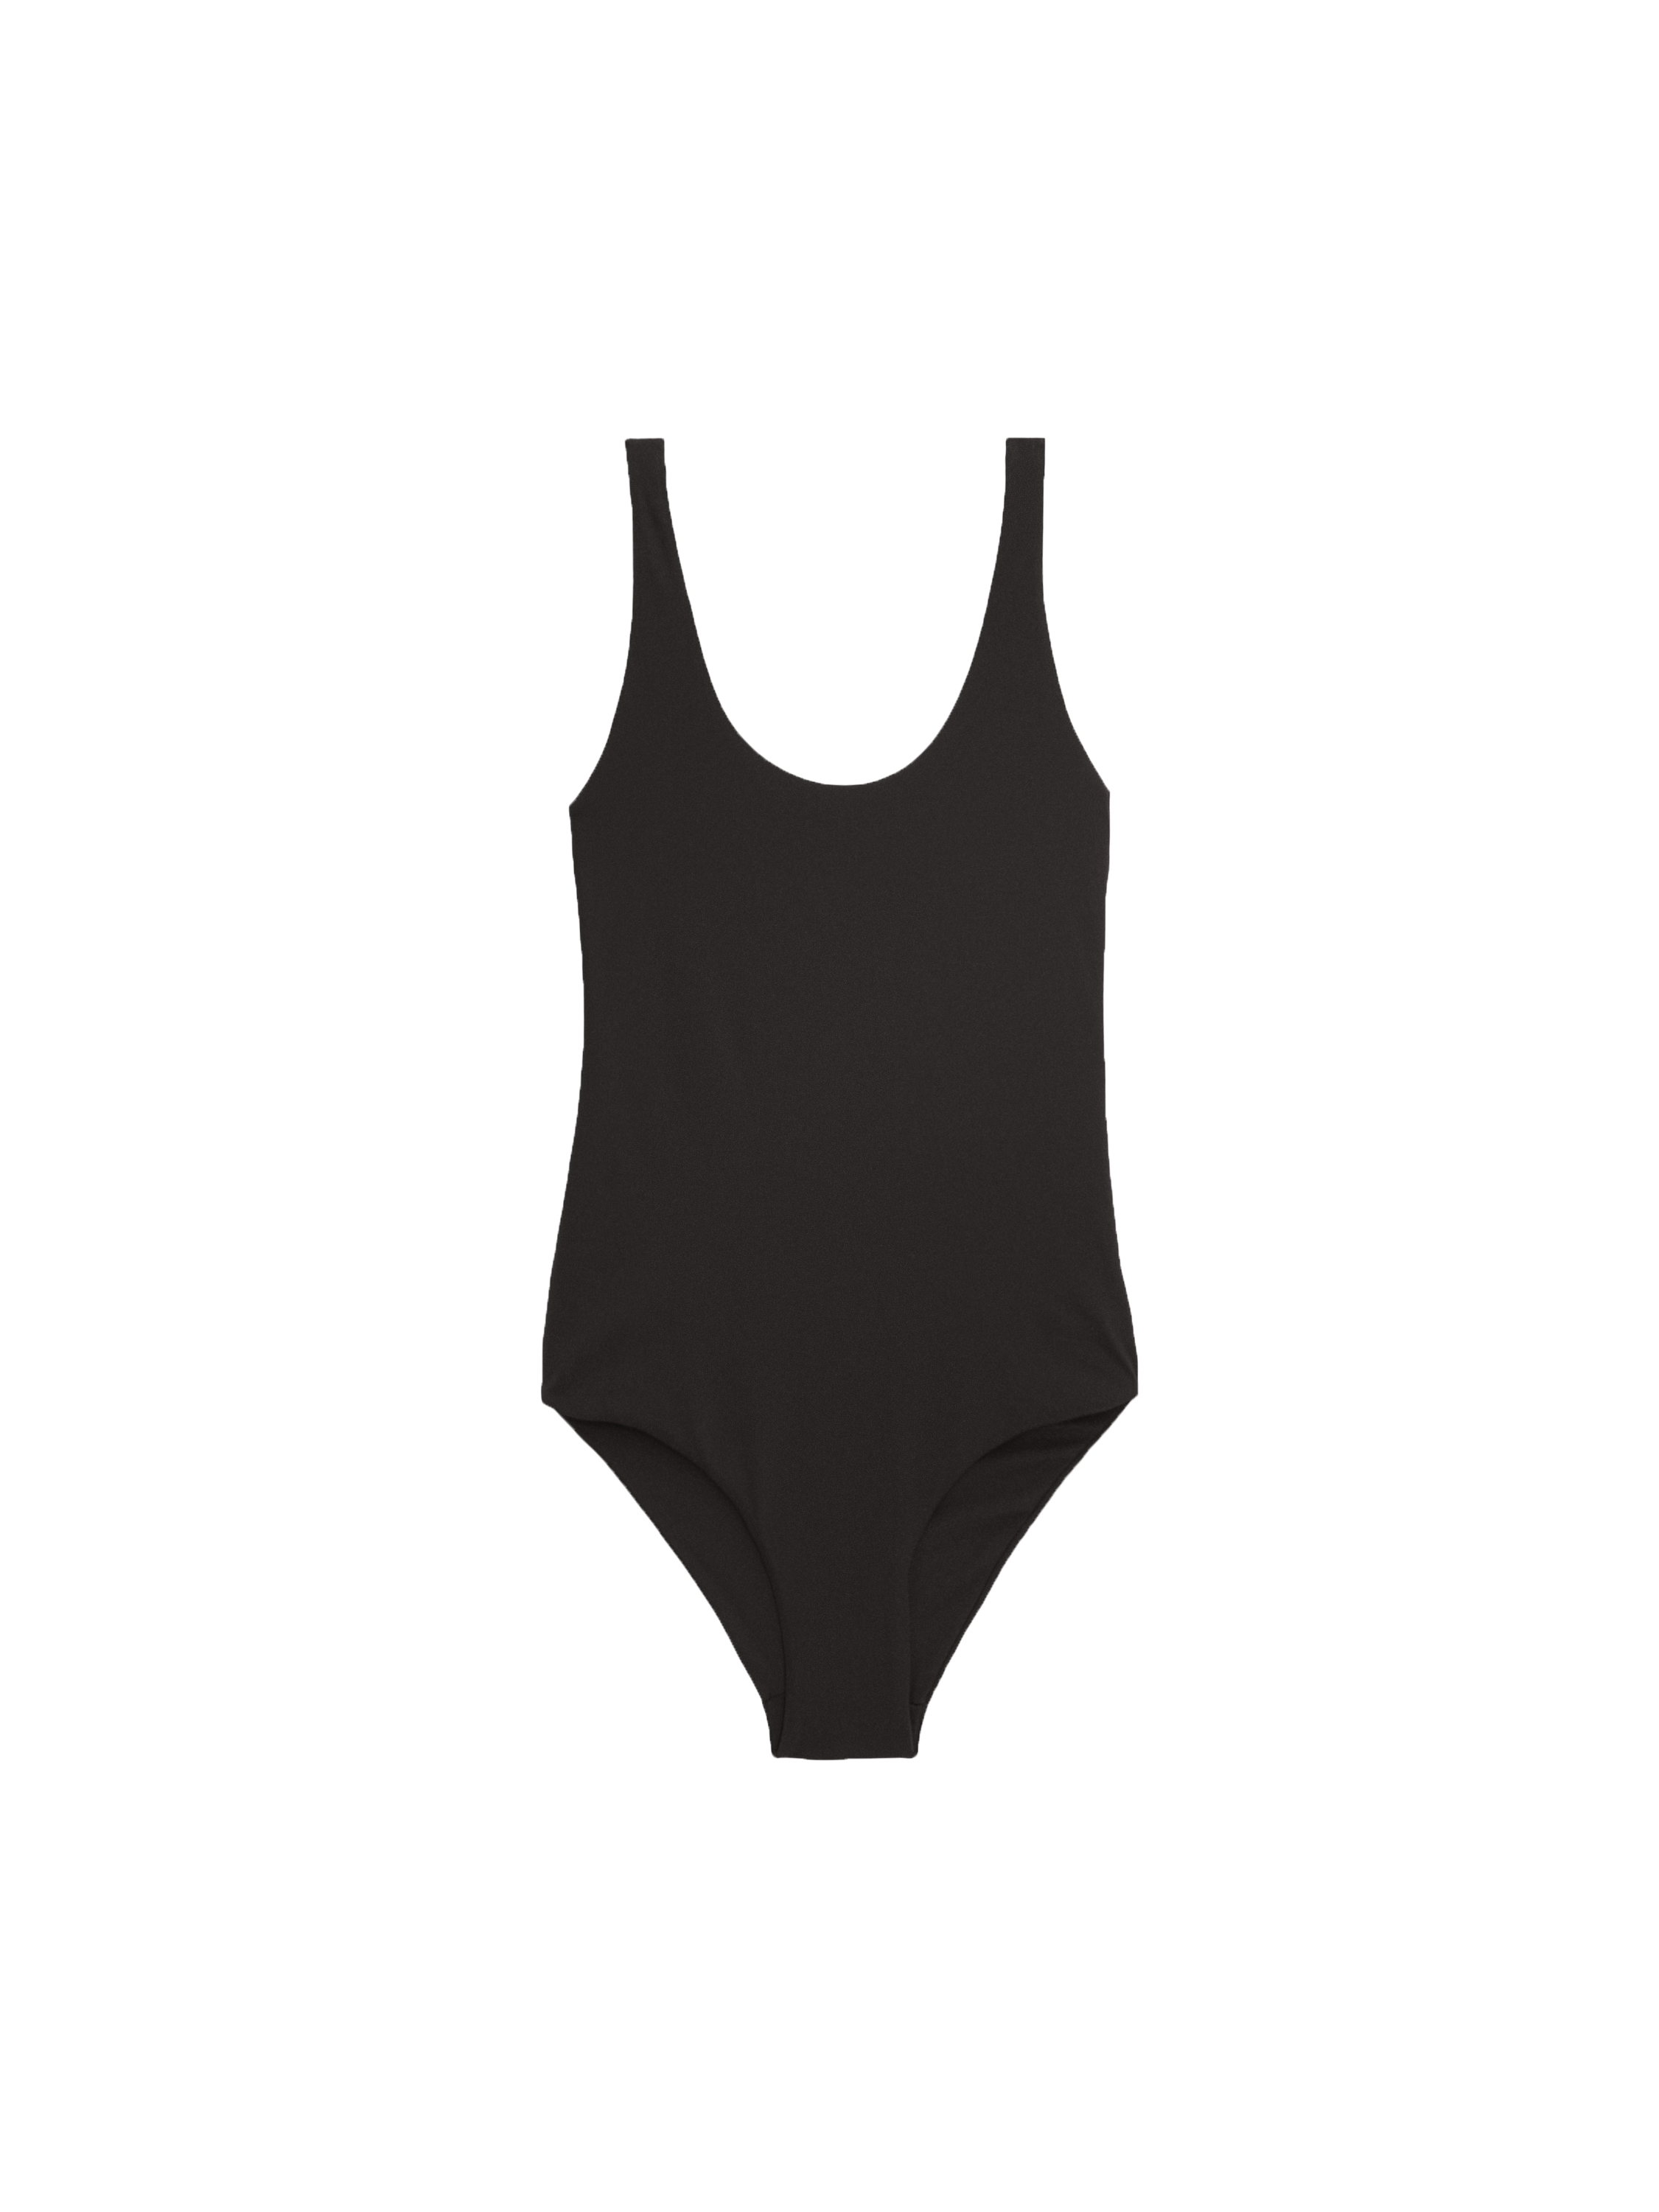  Swimsuit low-cut back